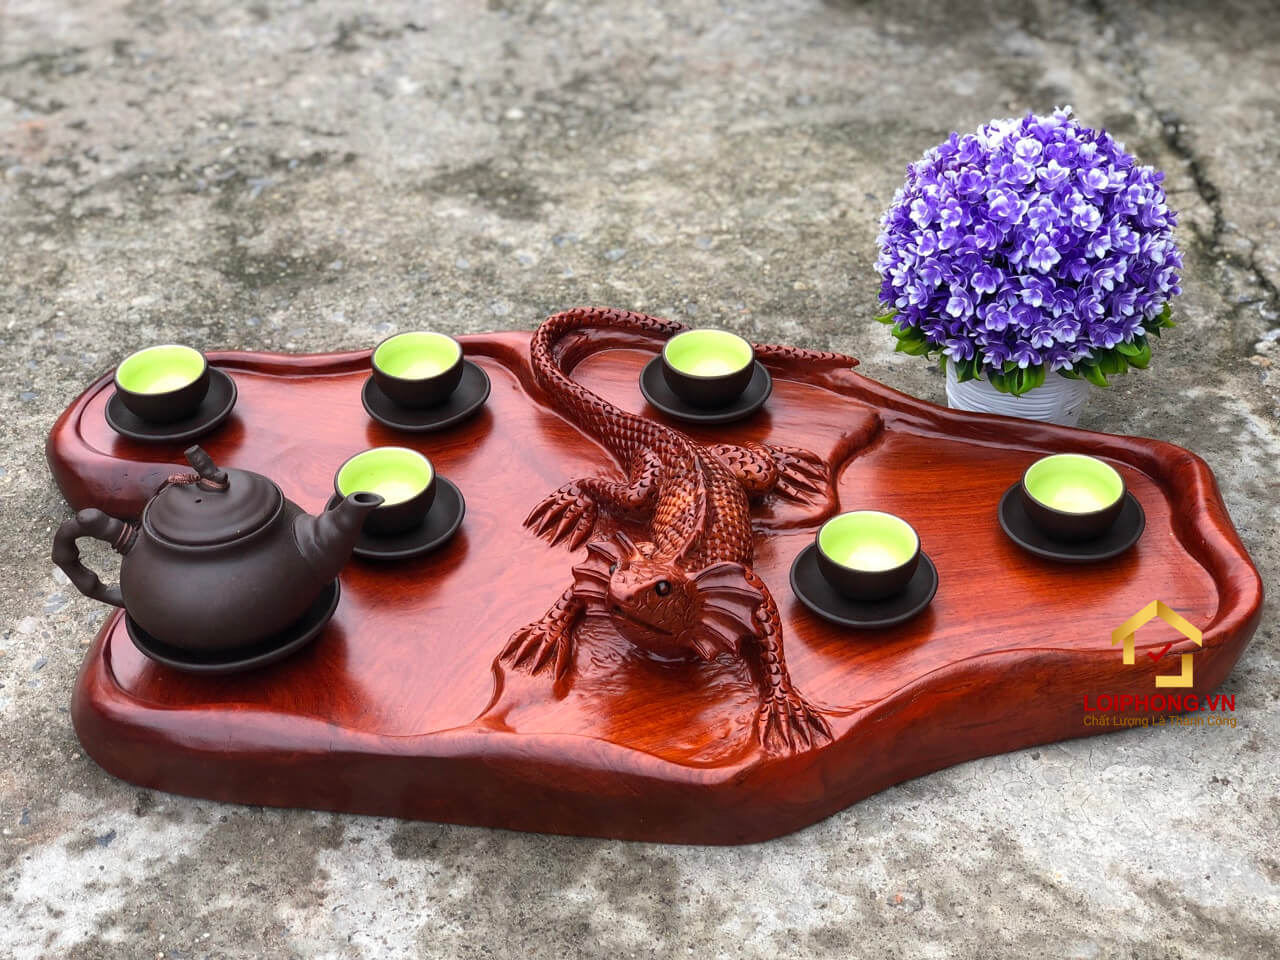 Khay trà đôi kỳ nhông bằng gỗ hương nguyên khối đẹp độc lạ